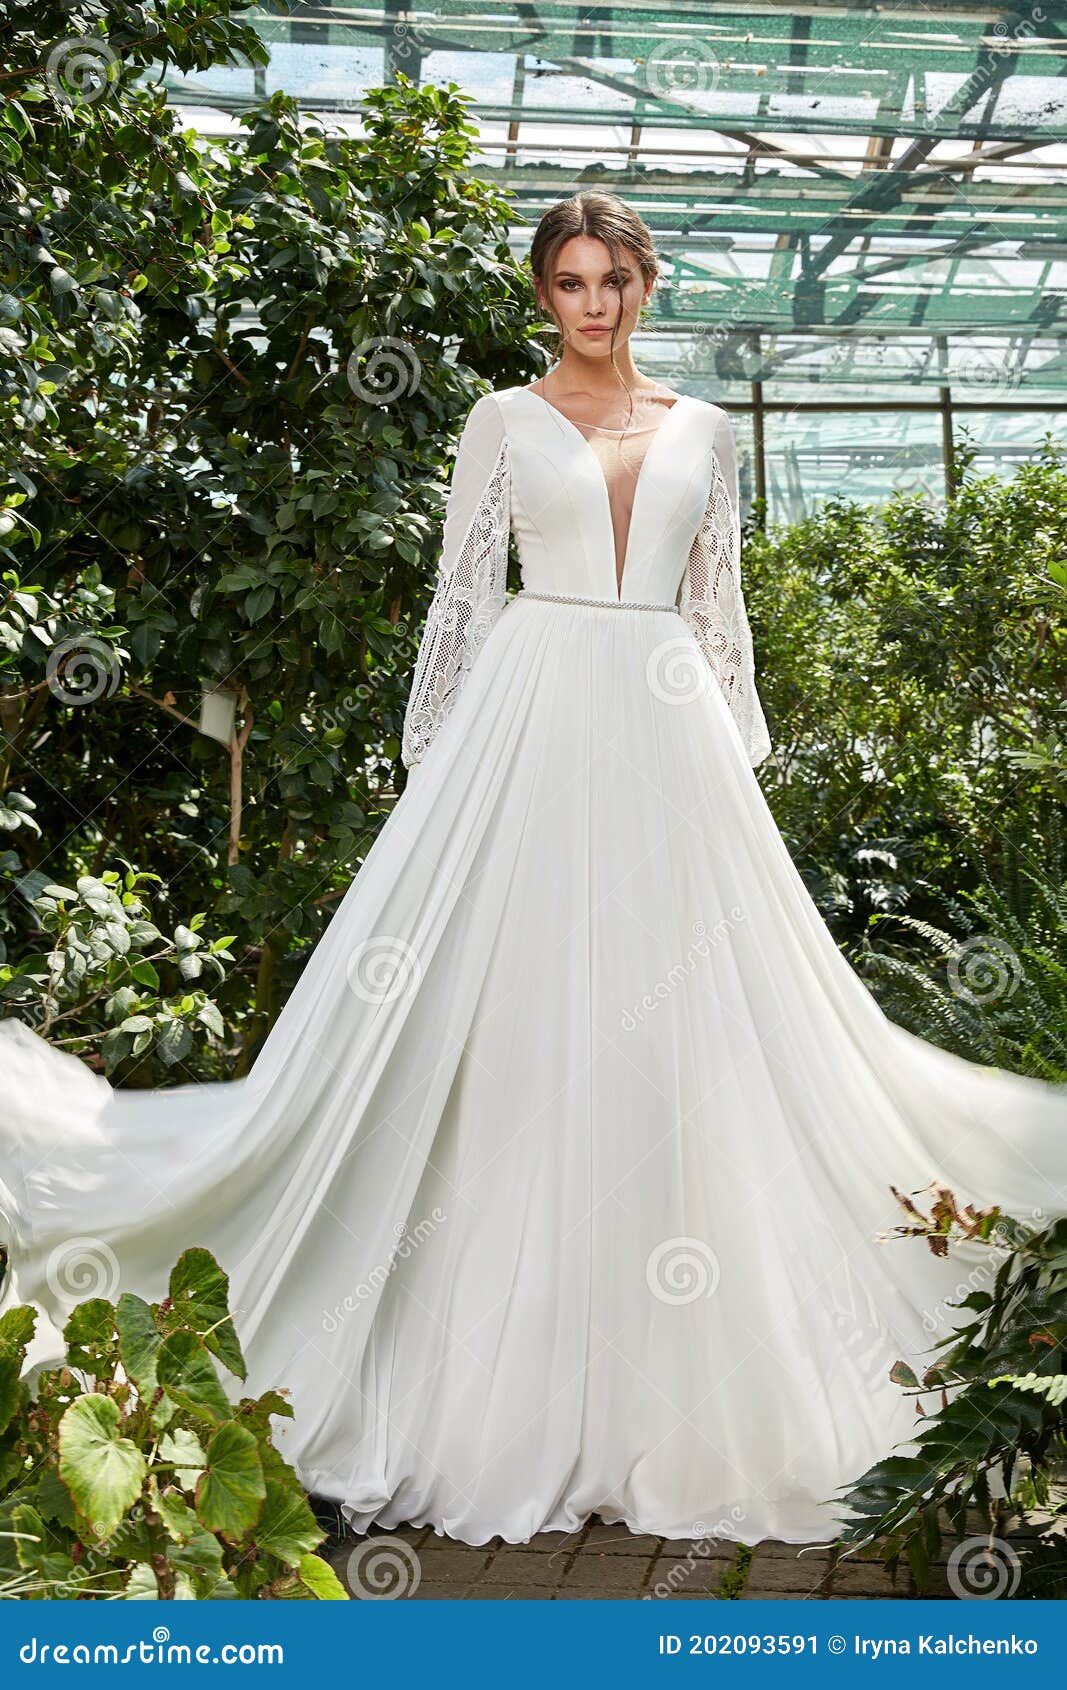 Hermosa Mujer Novia Con Vestido De Boda Blanco Largo Abrazo De Moda  Celebración De Matrimonio Gran Día En El Jardín Verde Imagen de archivo -  Imagen de verde, alineada: 202093591